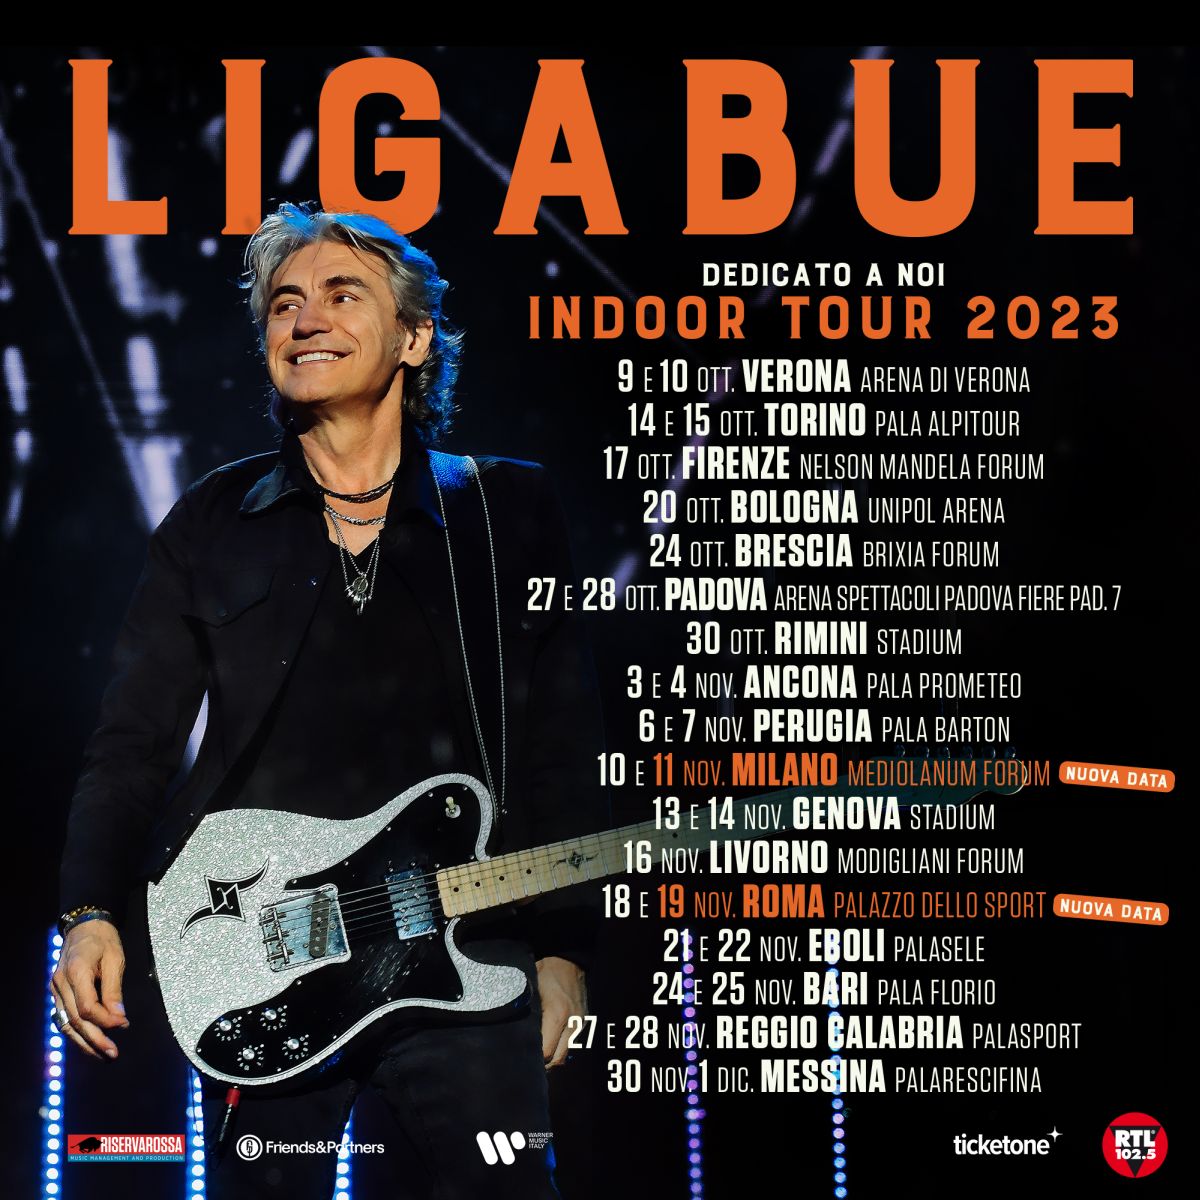 Ligabue tour 2023